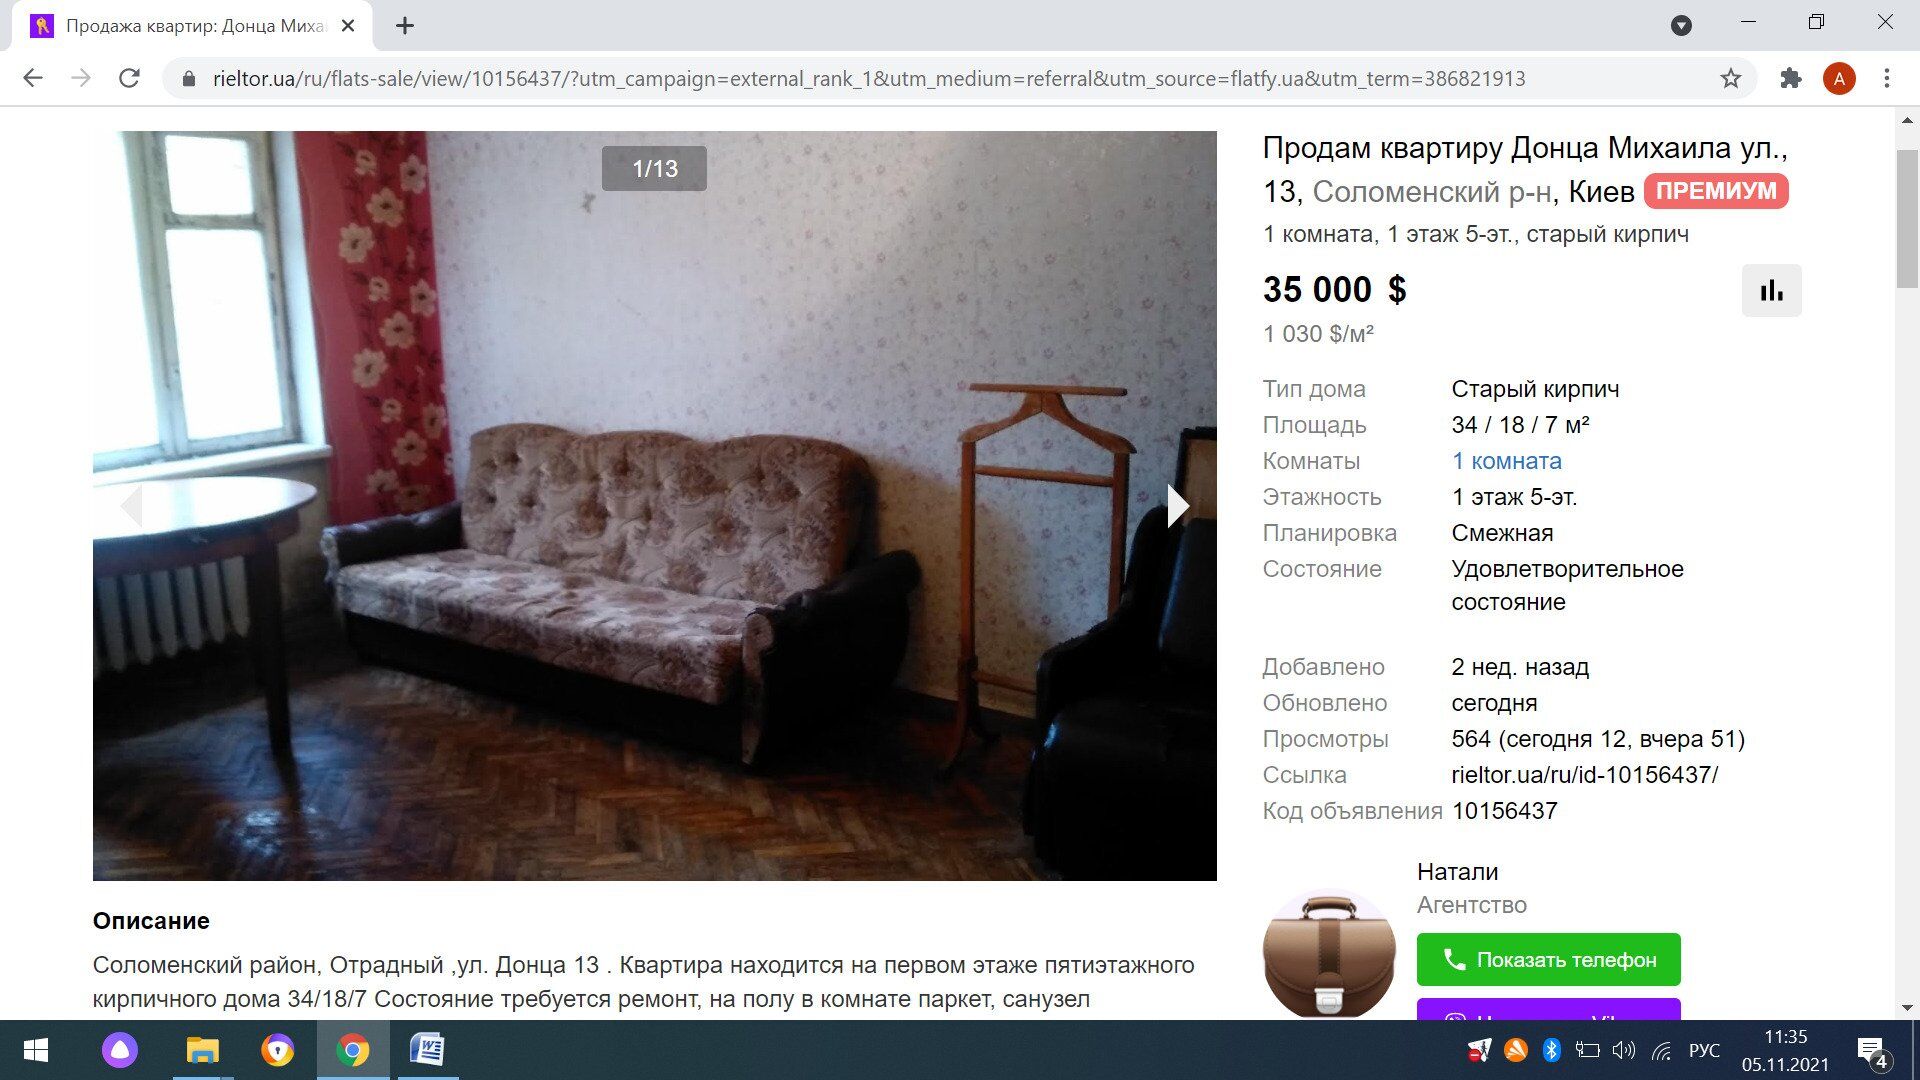 Хрущевка на ул. Донца продается за $35 тысяч